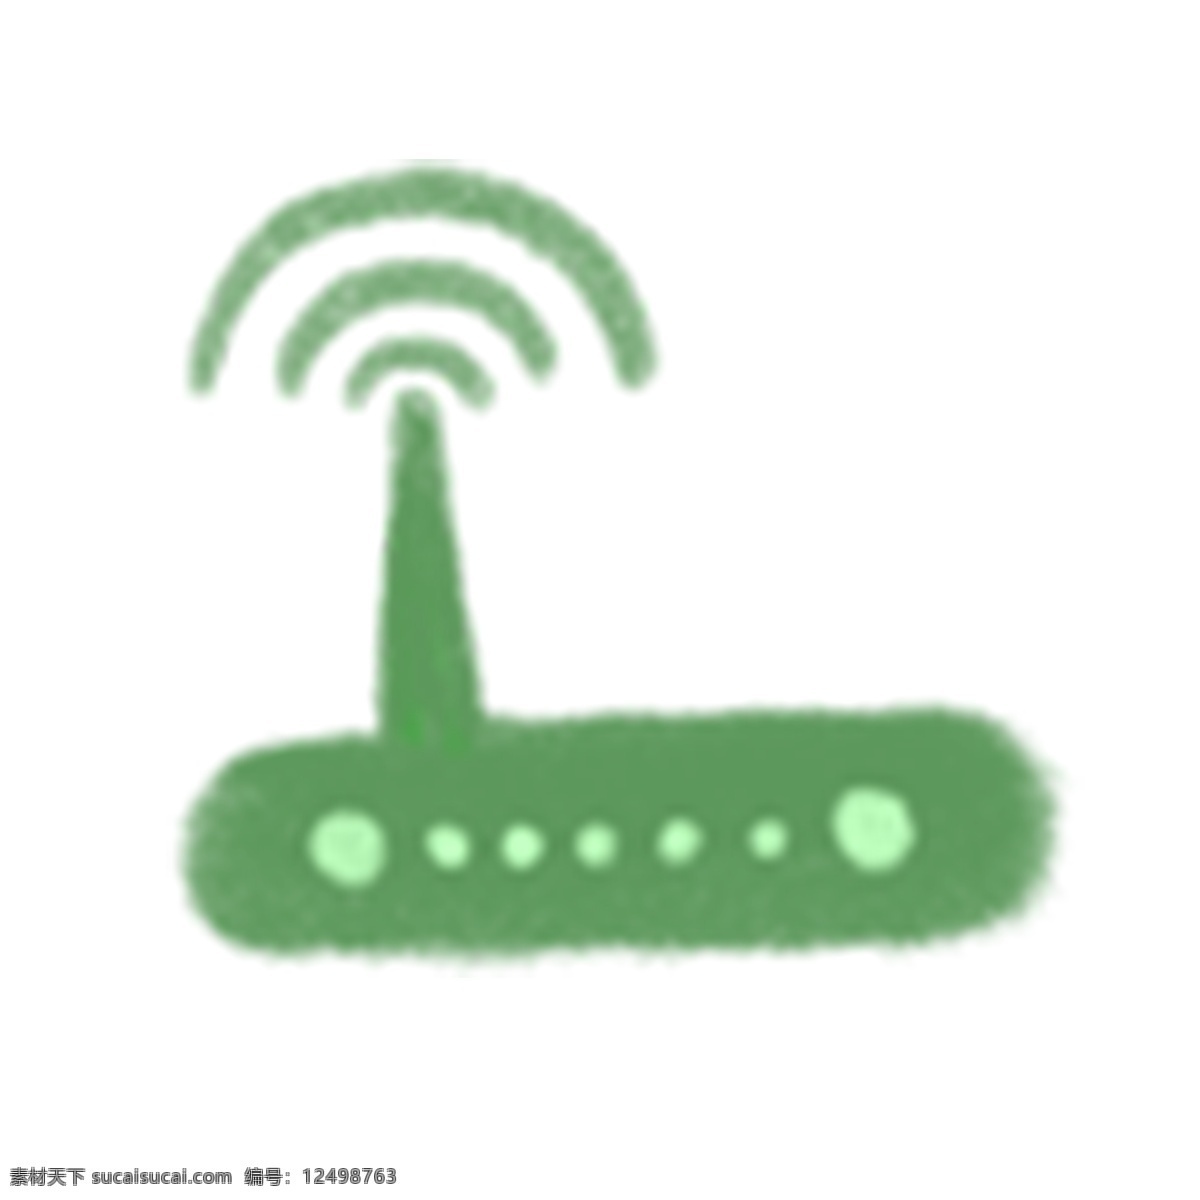 绿色 无线 路由器 通讯 图标 绿色路由器 无线路由器 ui图标 通讯图标 路由器图标